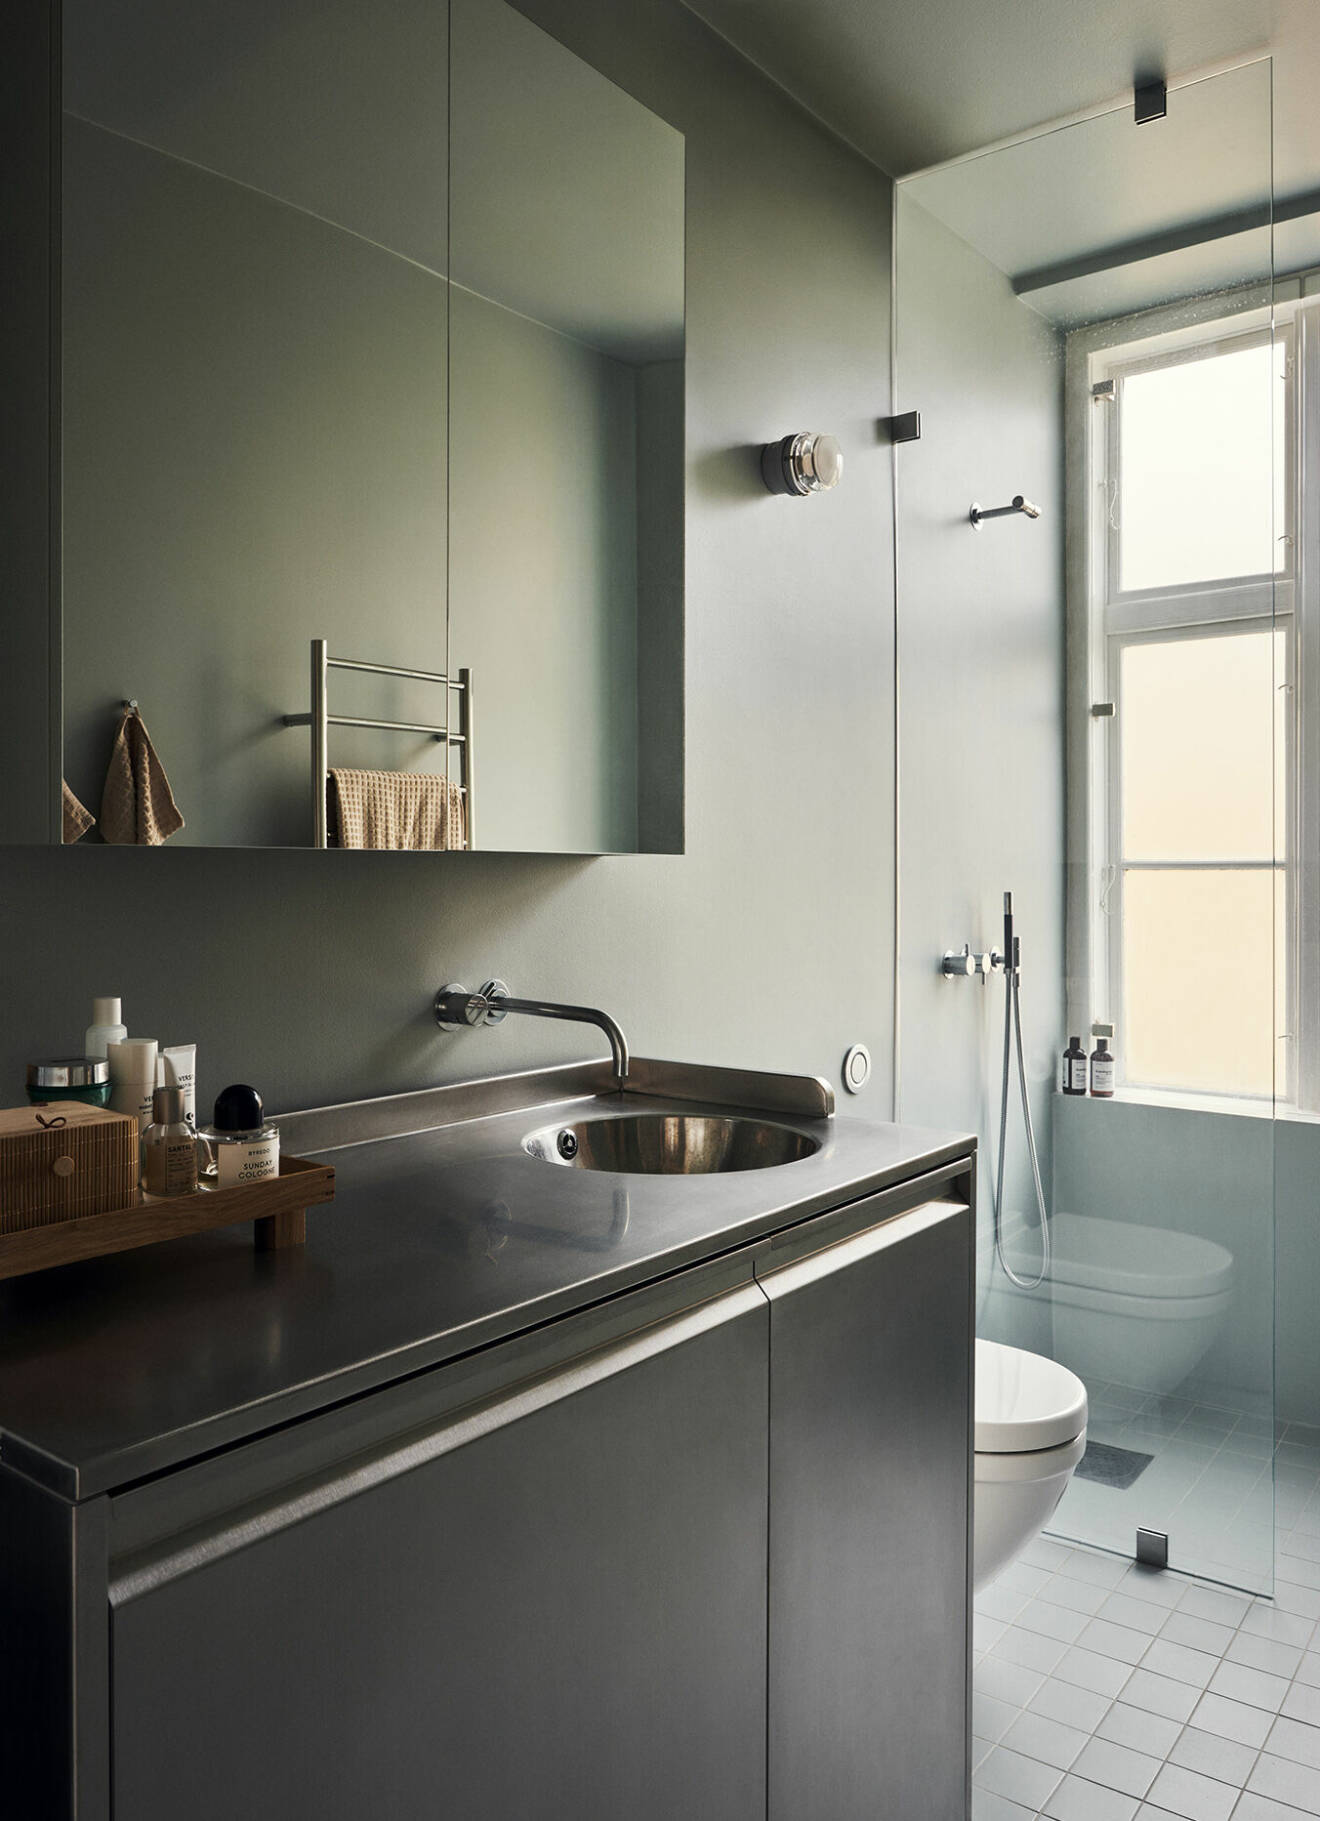 Det borstade rostfria stålet återkommer i kök och badrum. Arkitekt Johannes Norlander ombads fånga färgskalan från 1800-talskonstnären Vilhelm Hammershøi.